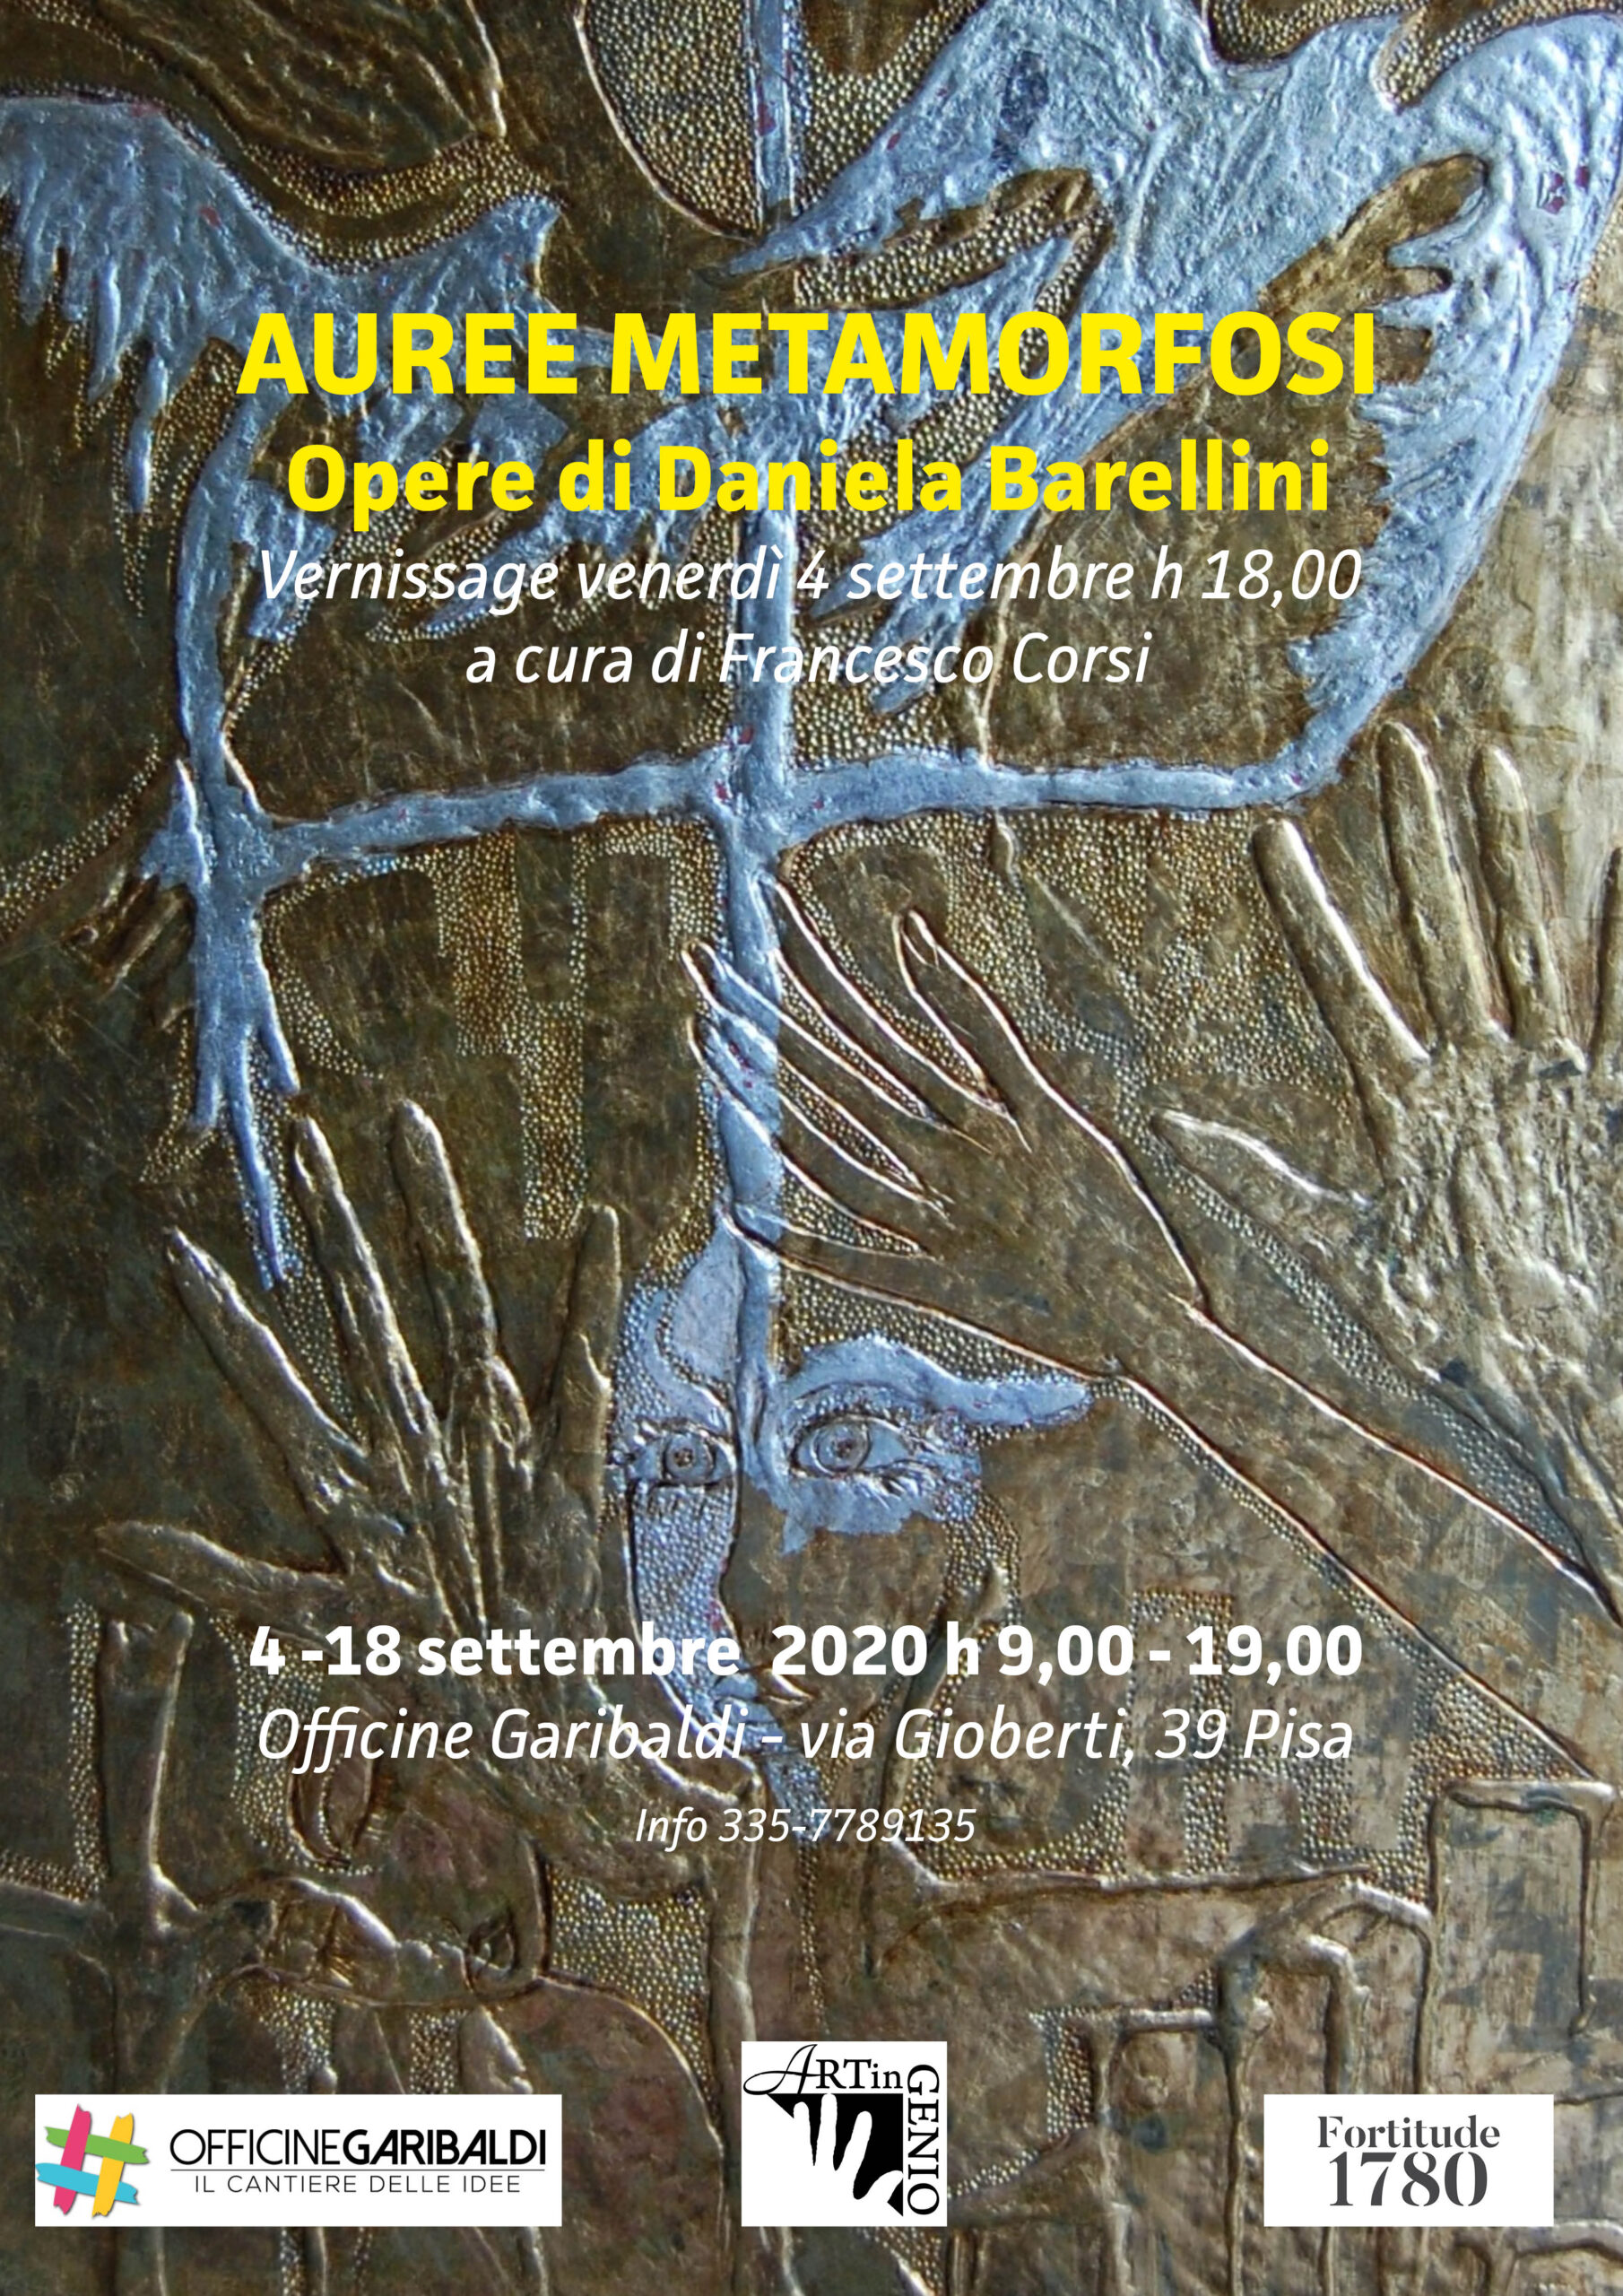 Auree Metamorfosi - Le opere di Daniela Barellini in esposizone alle Officina Garibaldi di Pisa dal 4 al 18 Settembre 2020